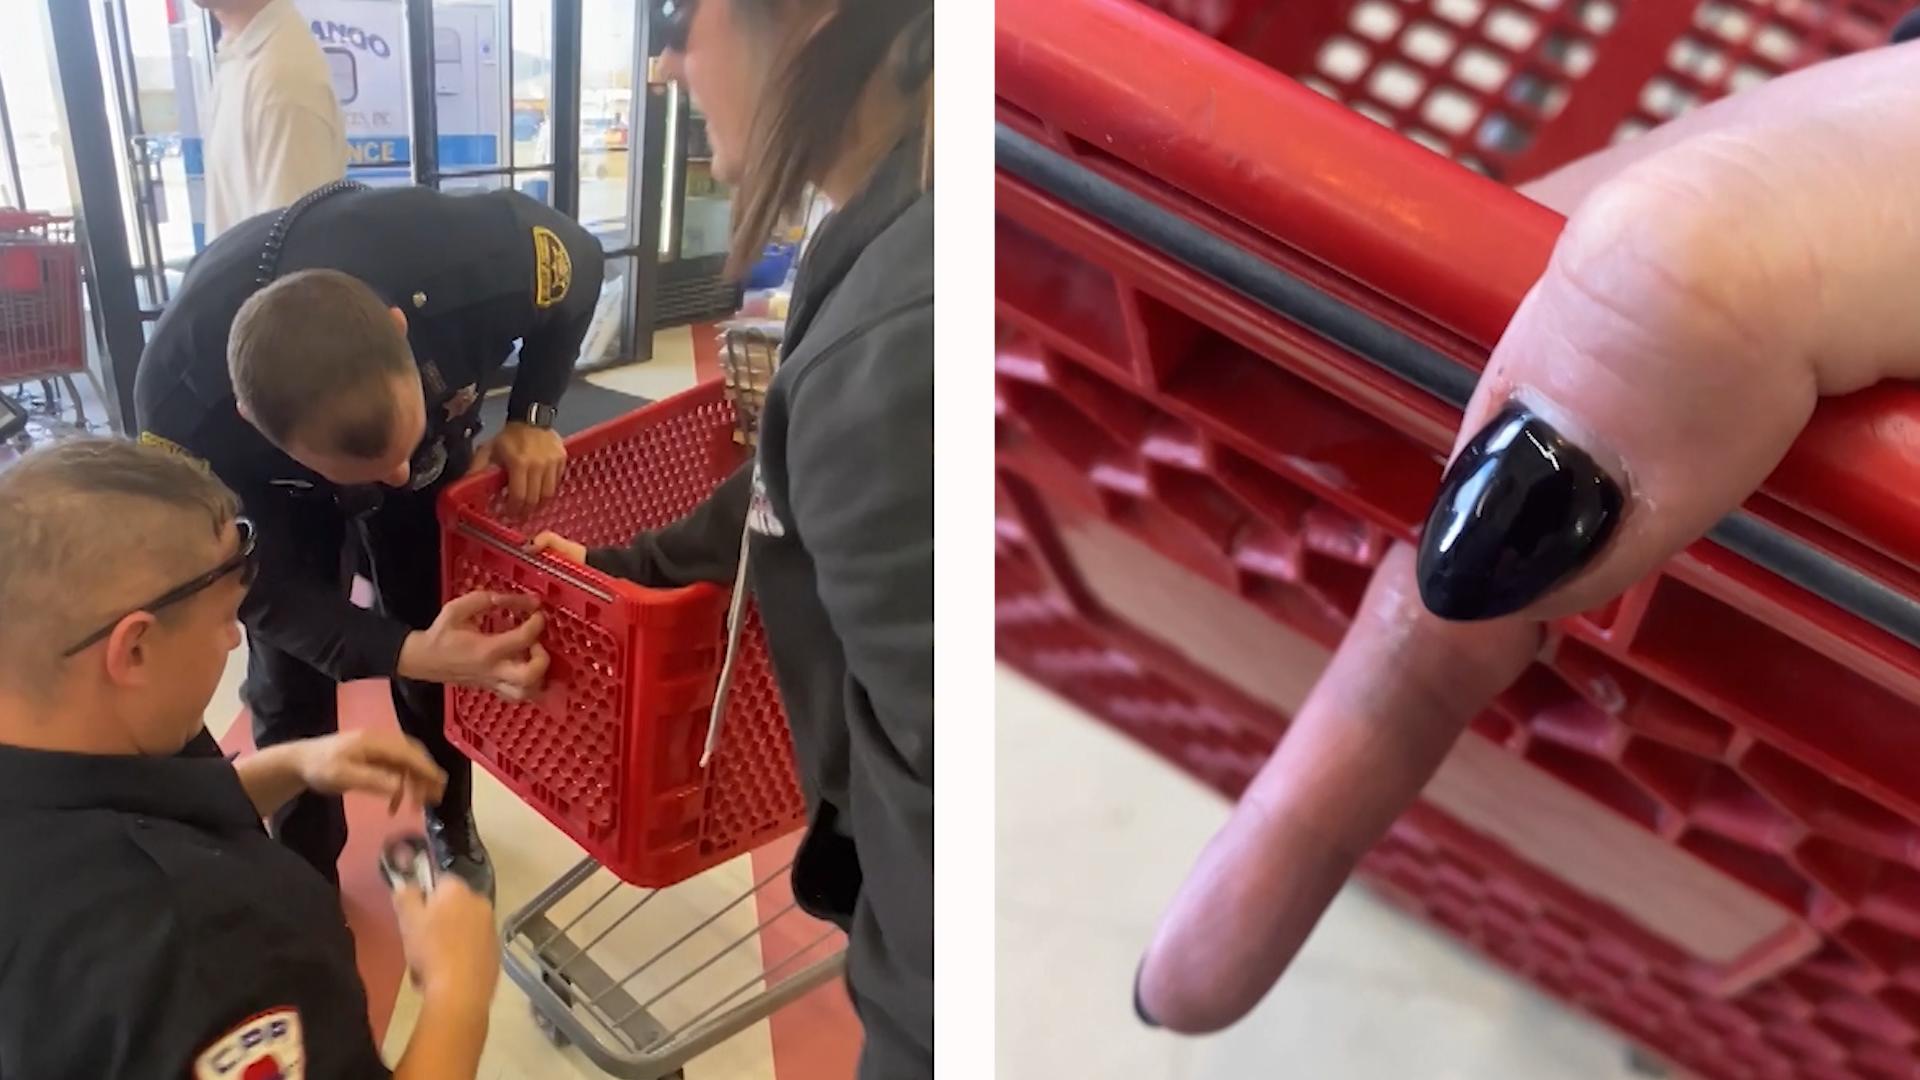 Finger-Fiasko! Frau steckt im Einkaufswagen fest Peinliche Aktion im Supermarkt